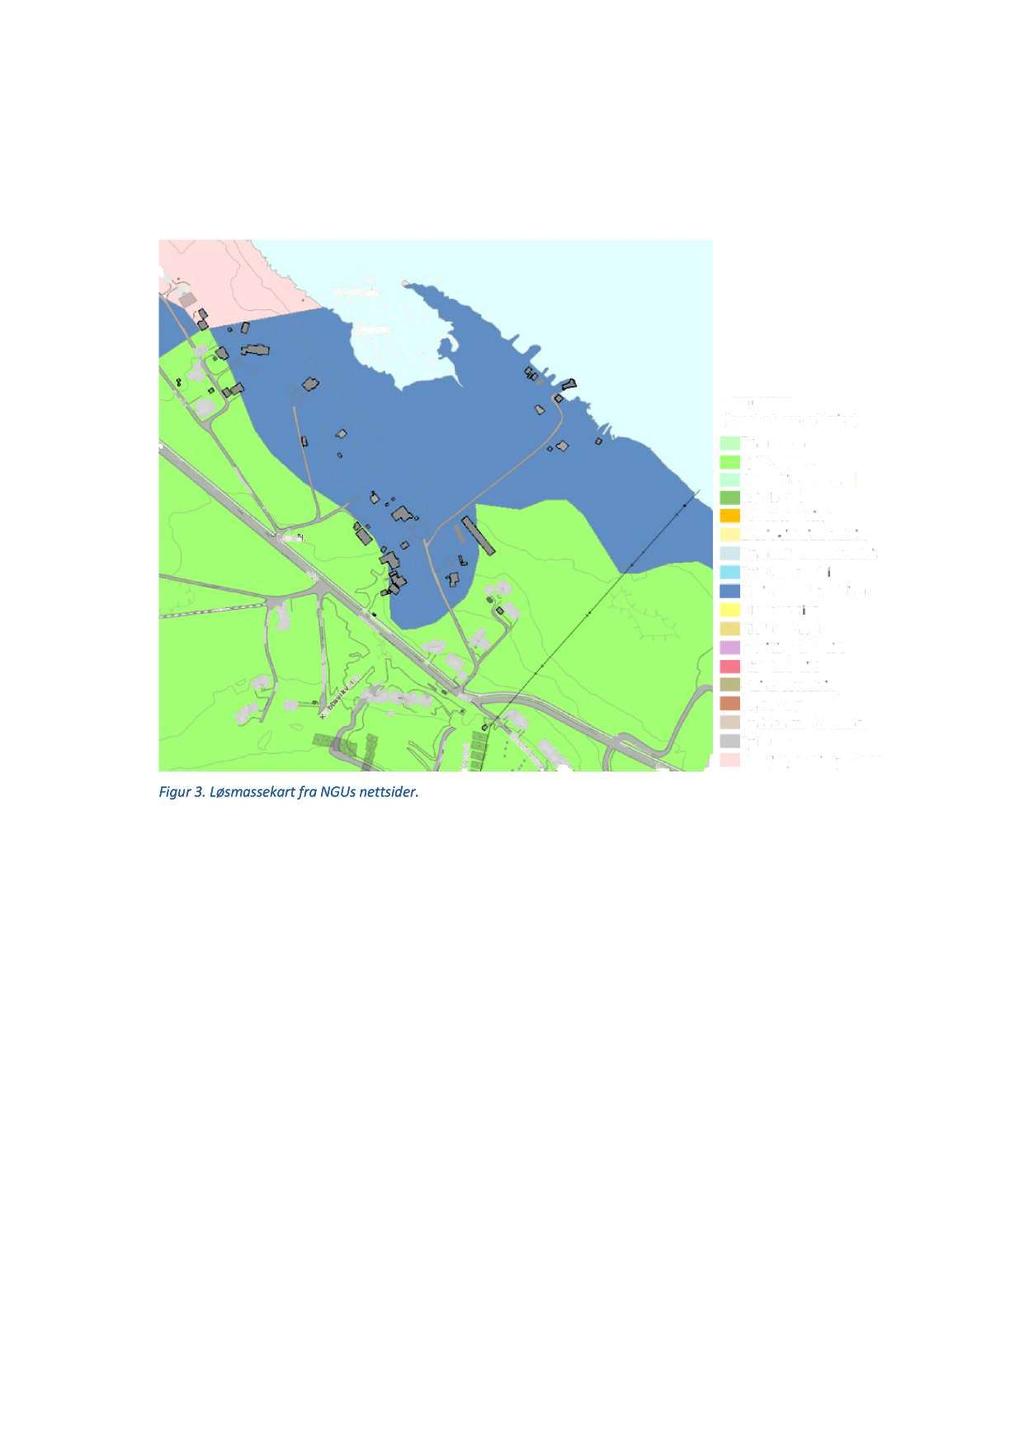 3.1.3 Avgrens områder med marine avsetninger Figur 3 viser kvartærgeologis kart over området med antatt utb redelse av marine avsetninger.